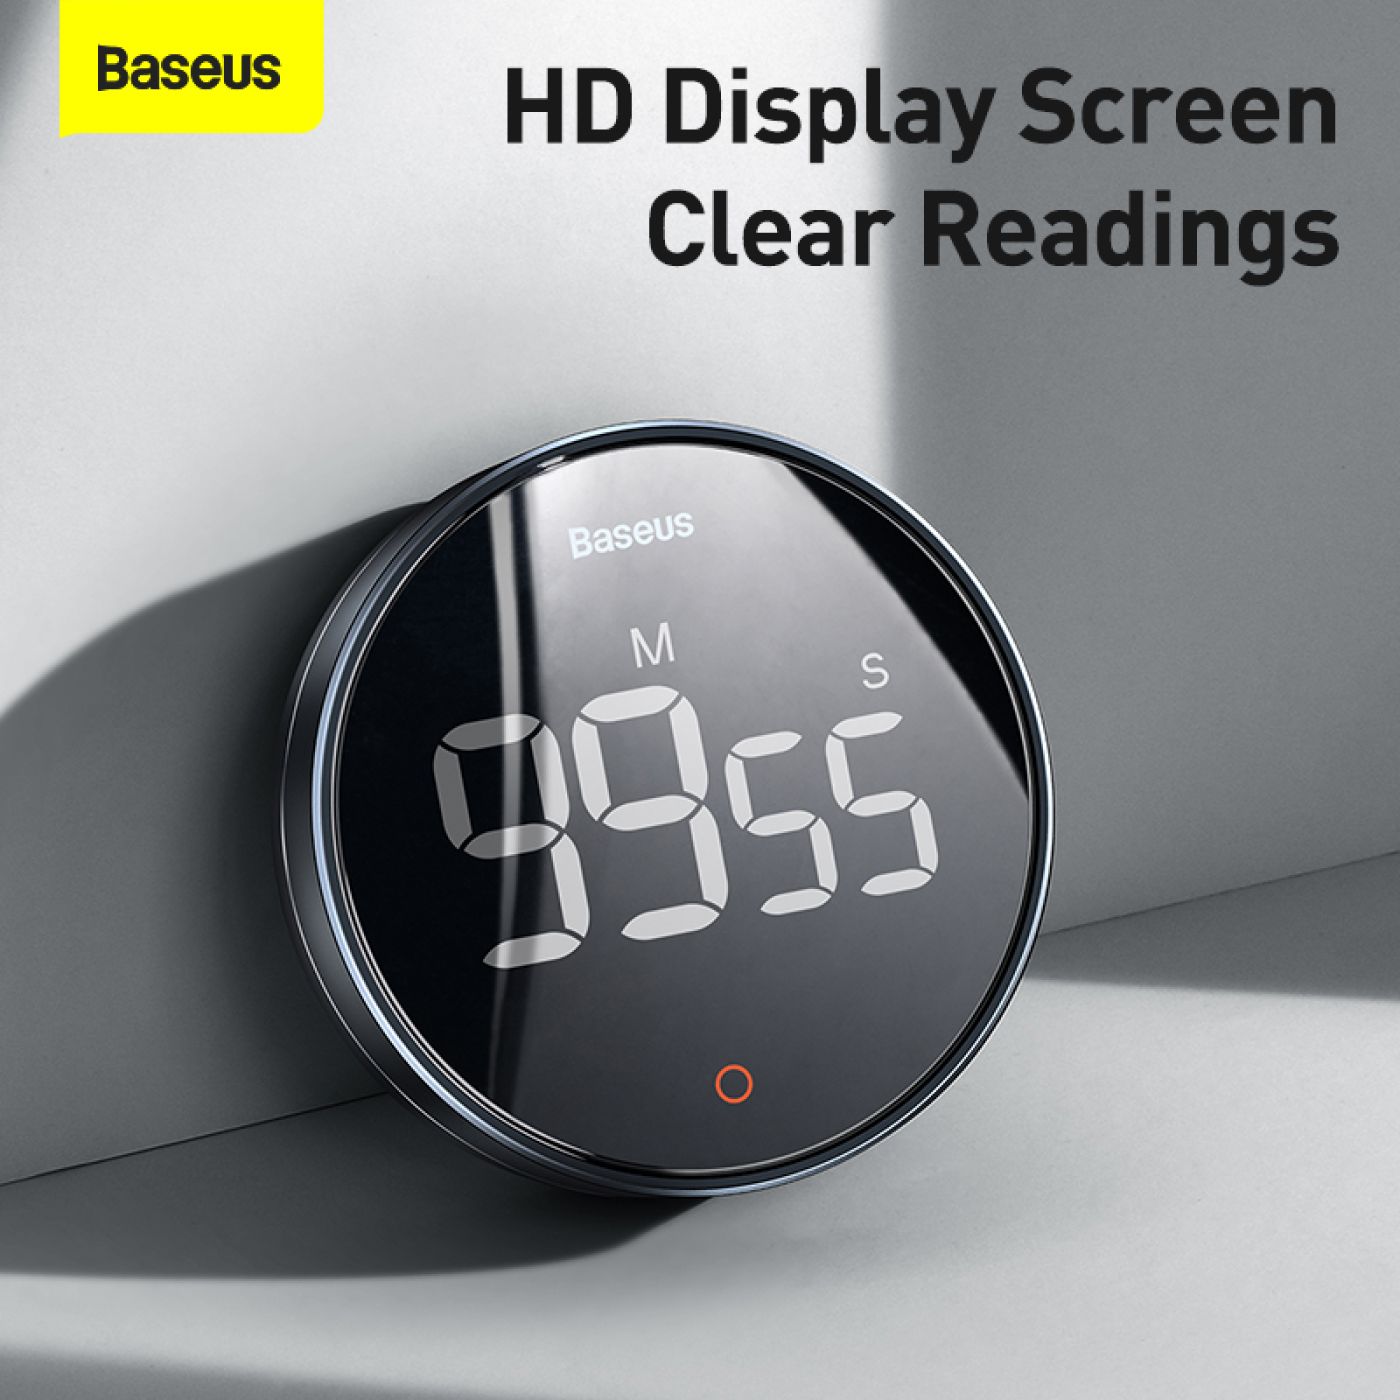 Đồng hồ hẹn giờ đếm ngược Baseus Heyo Rotation LED Countdown Timer Pro